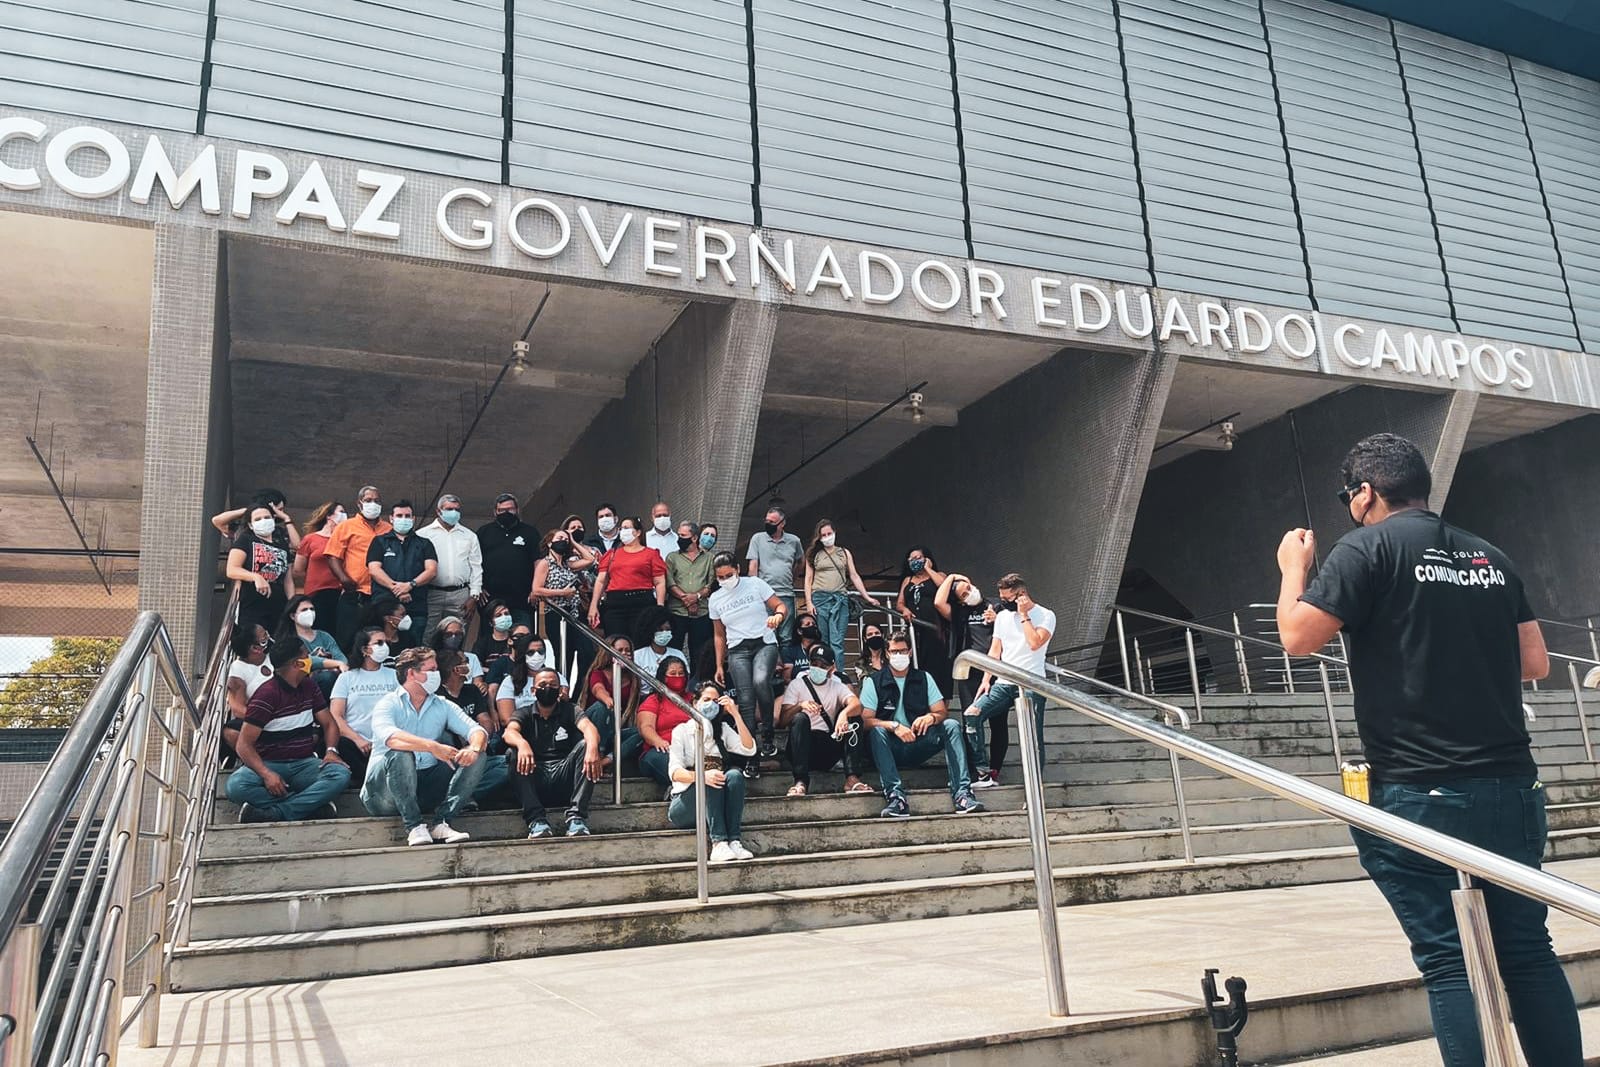 Equipe da Sedet no Compaz Governador Eduardo Campos. Foto: Ascom Sedet